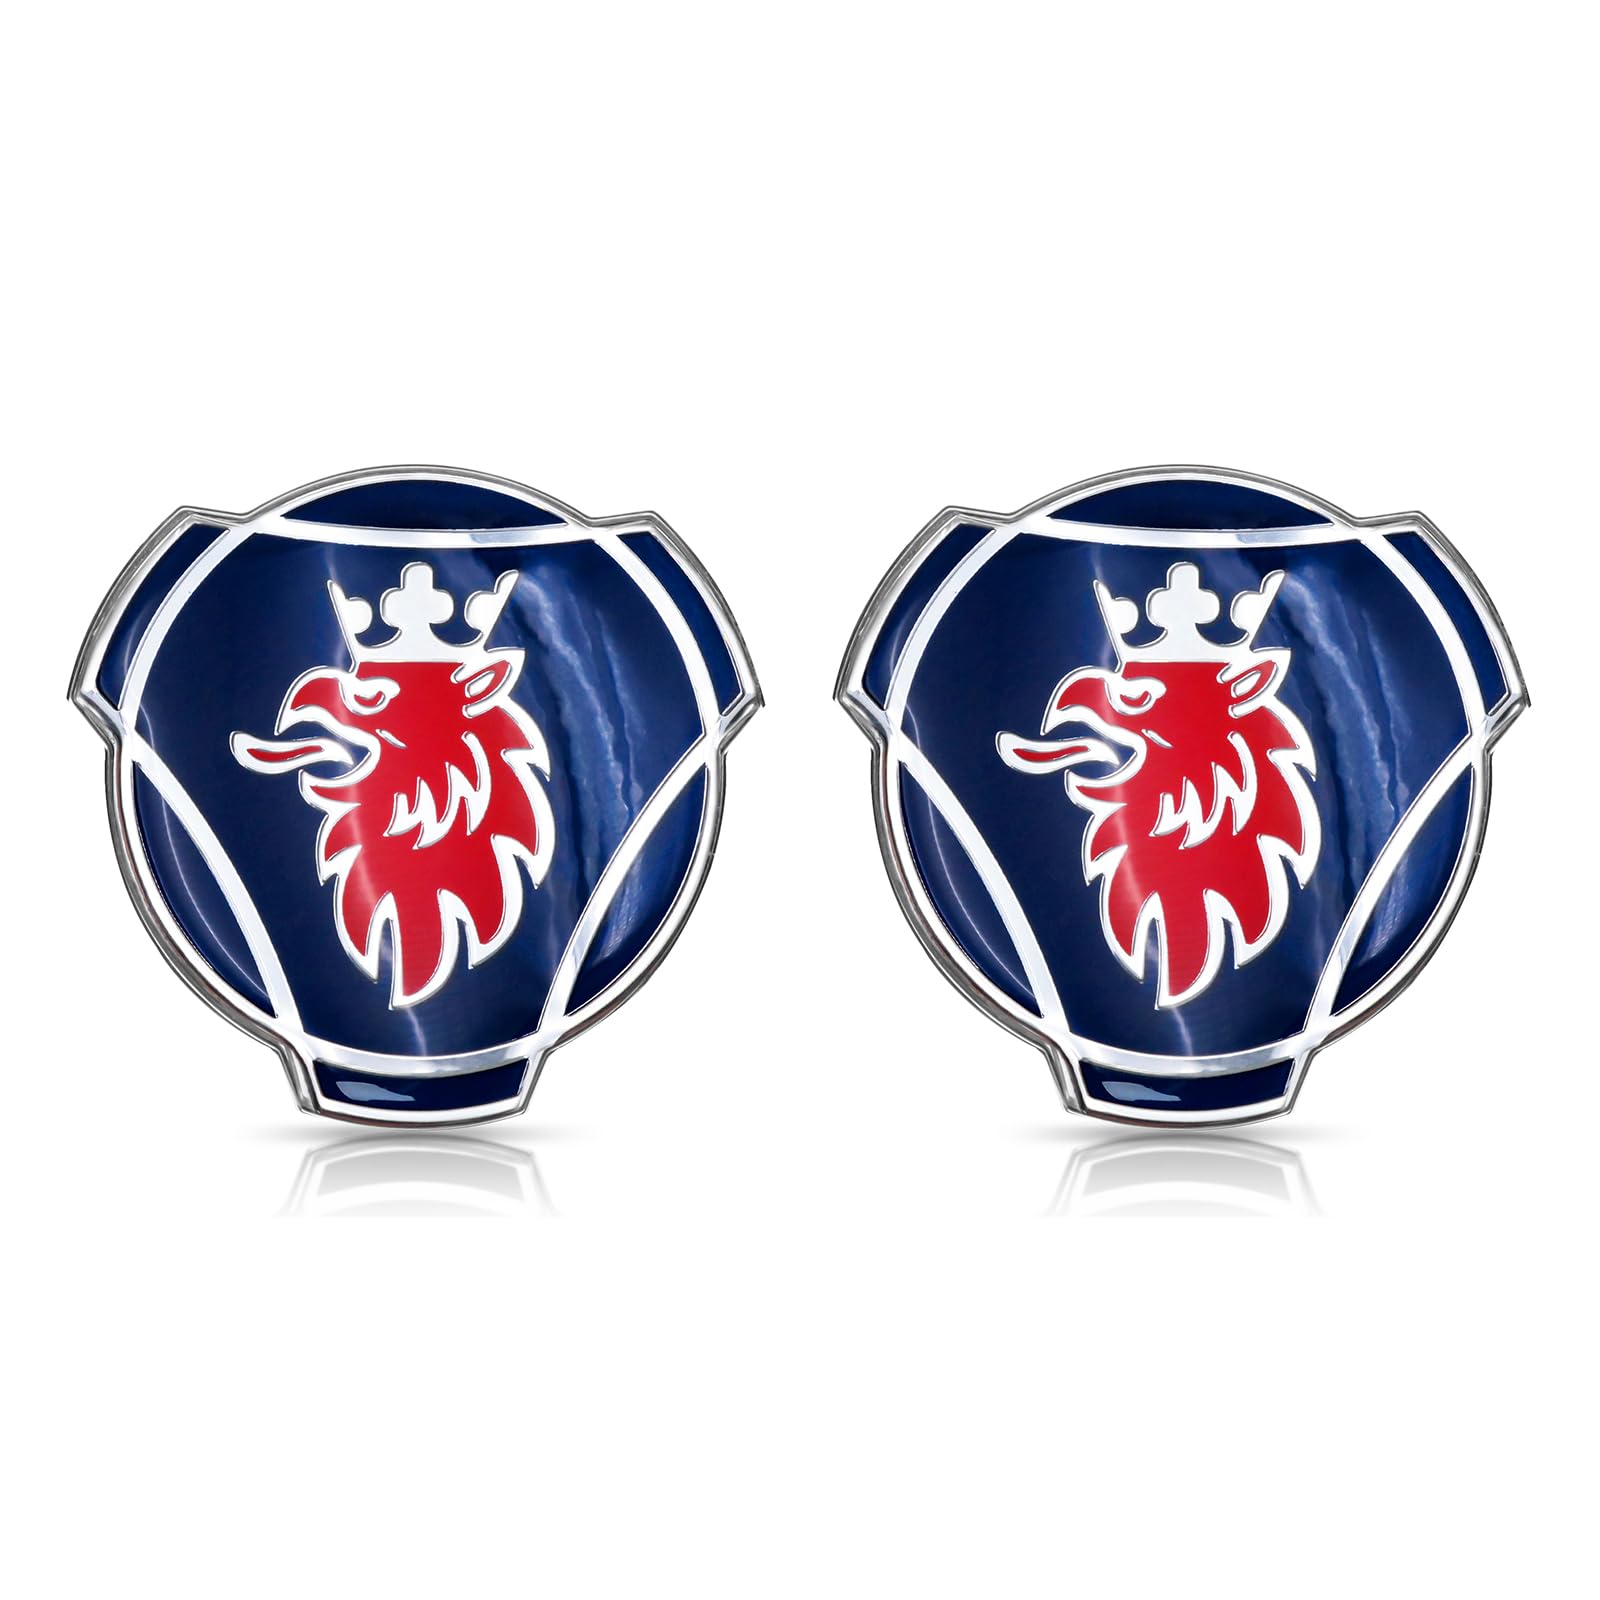 2 x 80 mm blaues und rotes Griffin-Logo mit silberfarbener Krone, passend für Scania Lkw Frontgrill-Emblem, Abzeichen 1401610 von Grenric